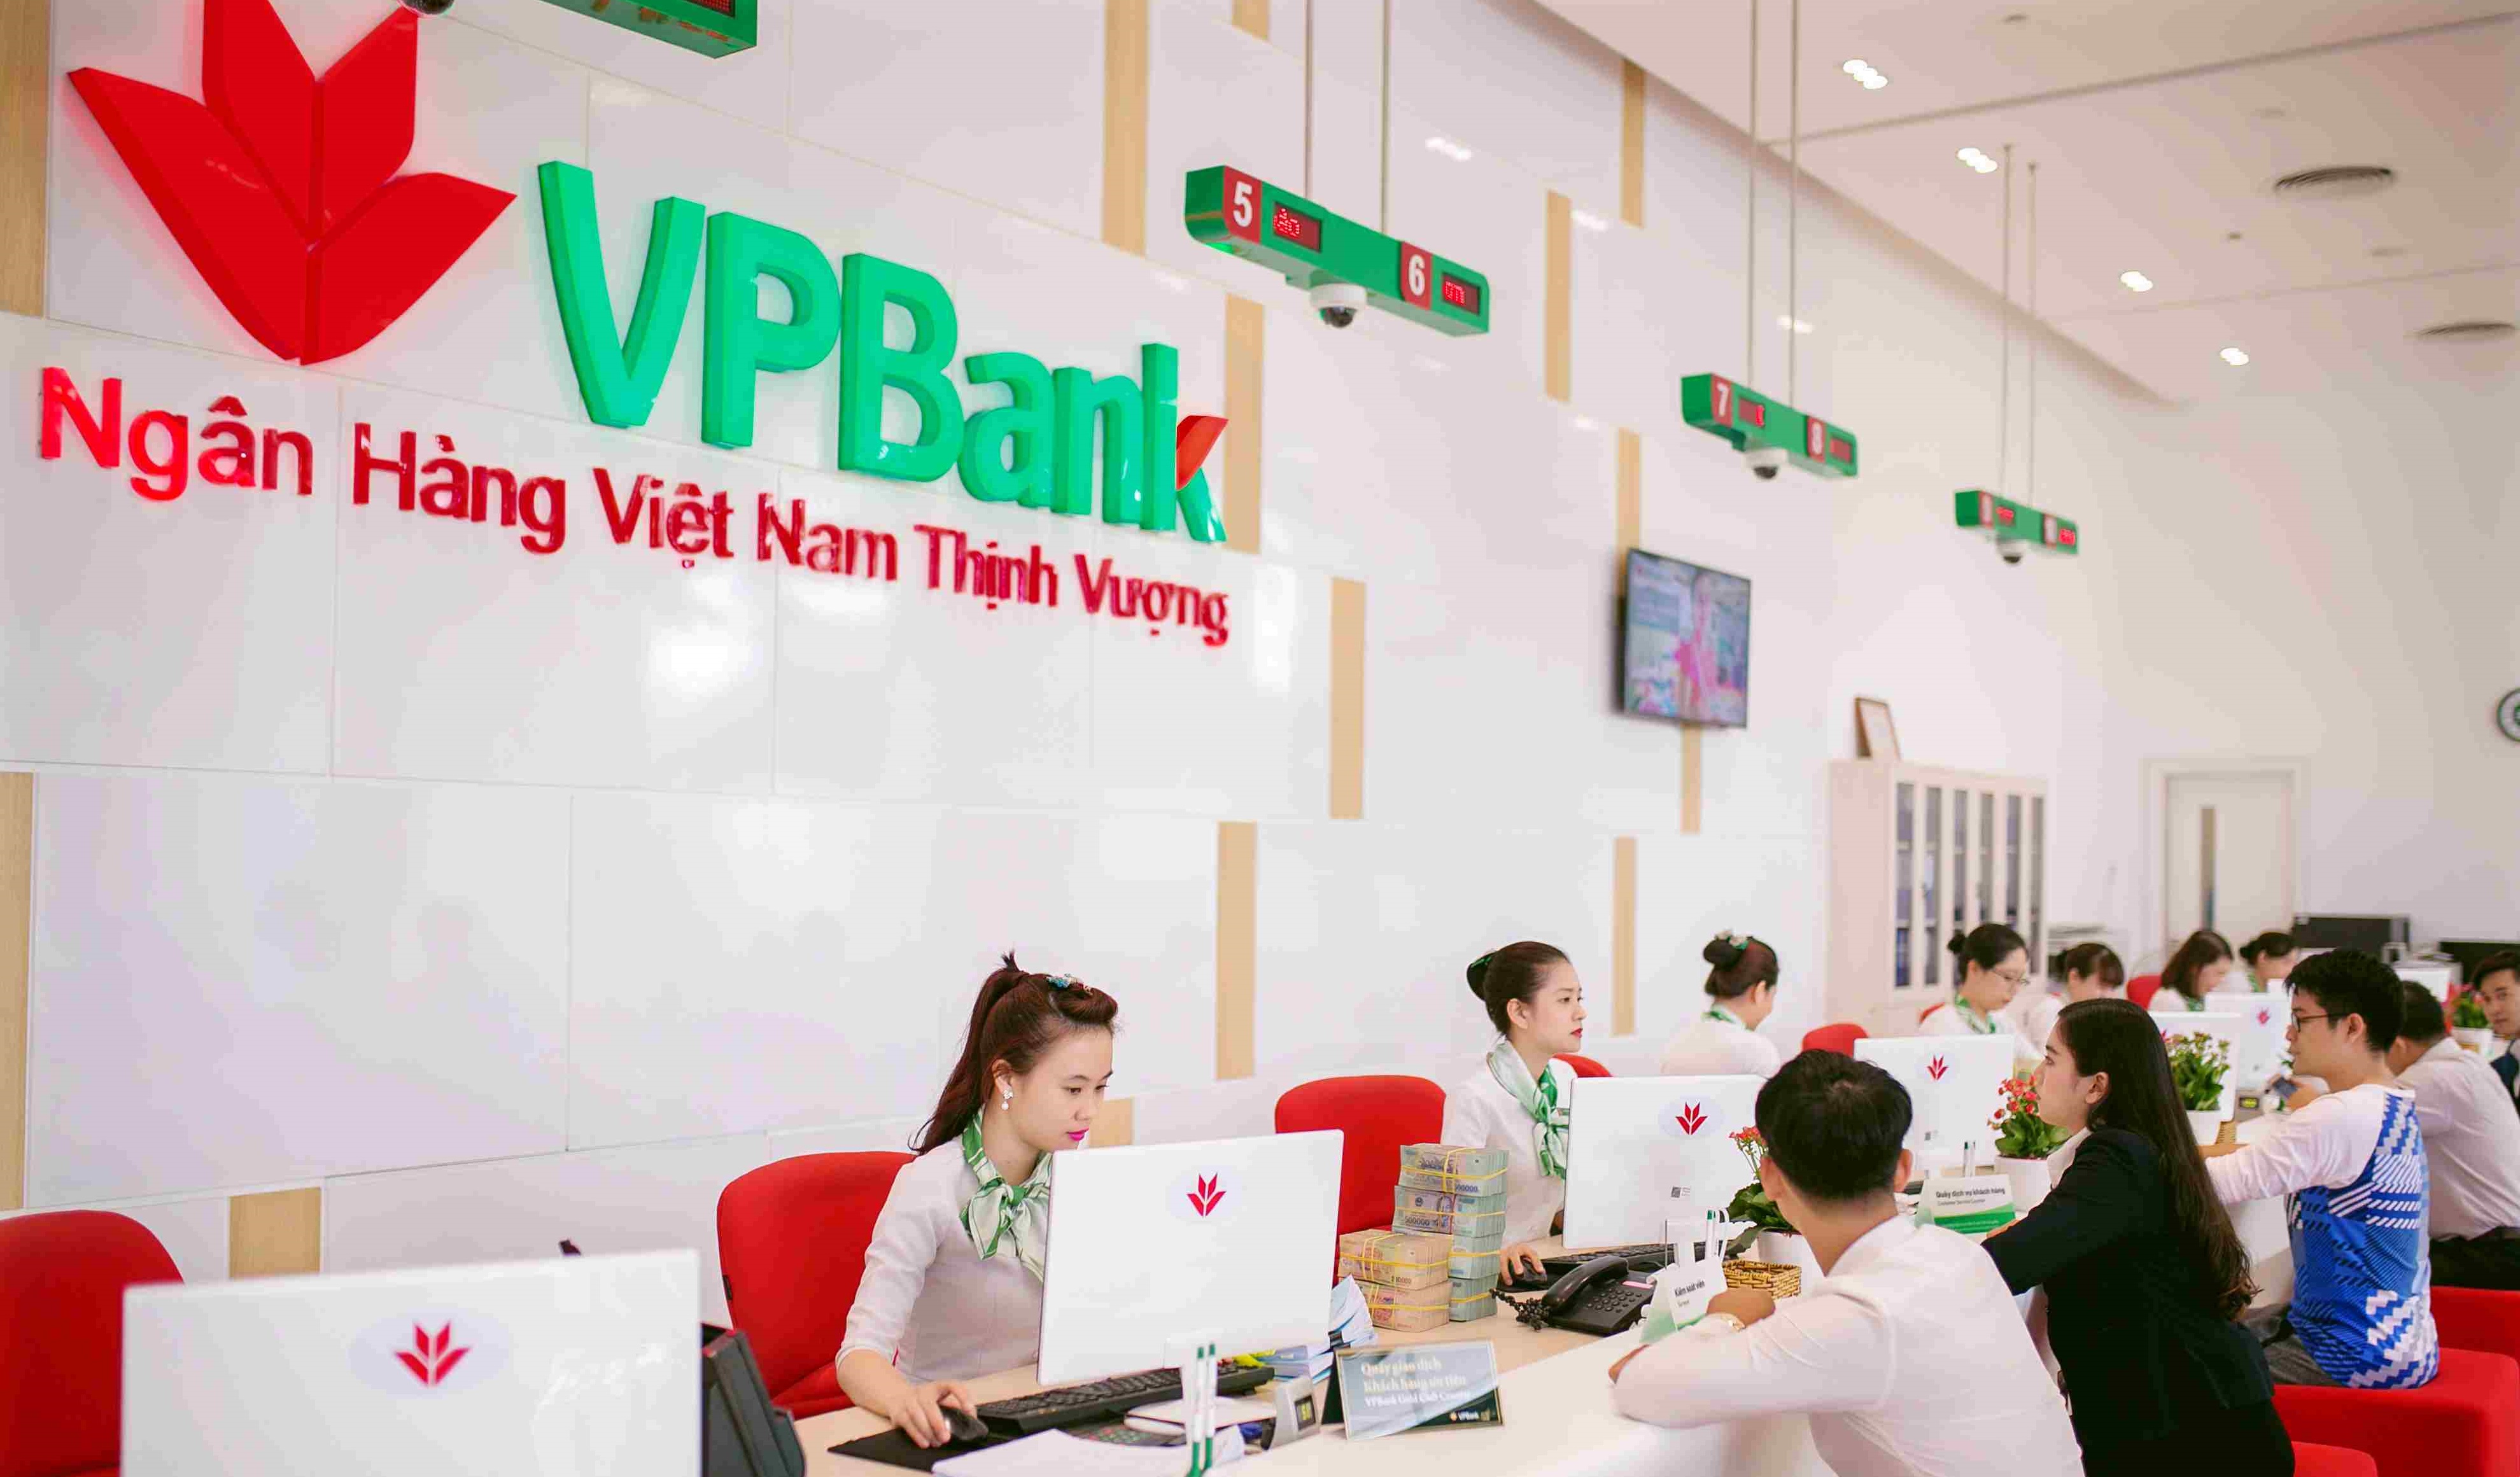 Lợi nhuận hợp nhất quý II của VPBank tăng 34% so với cùng kỳ